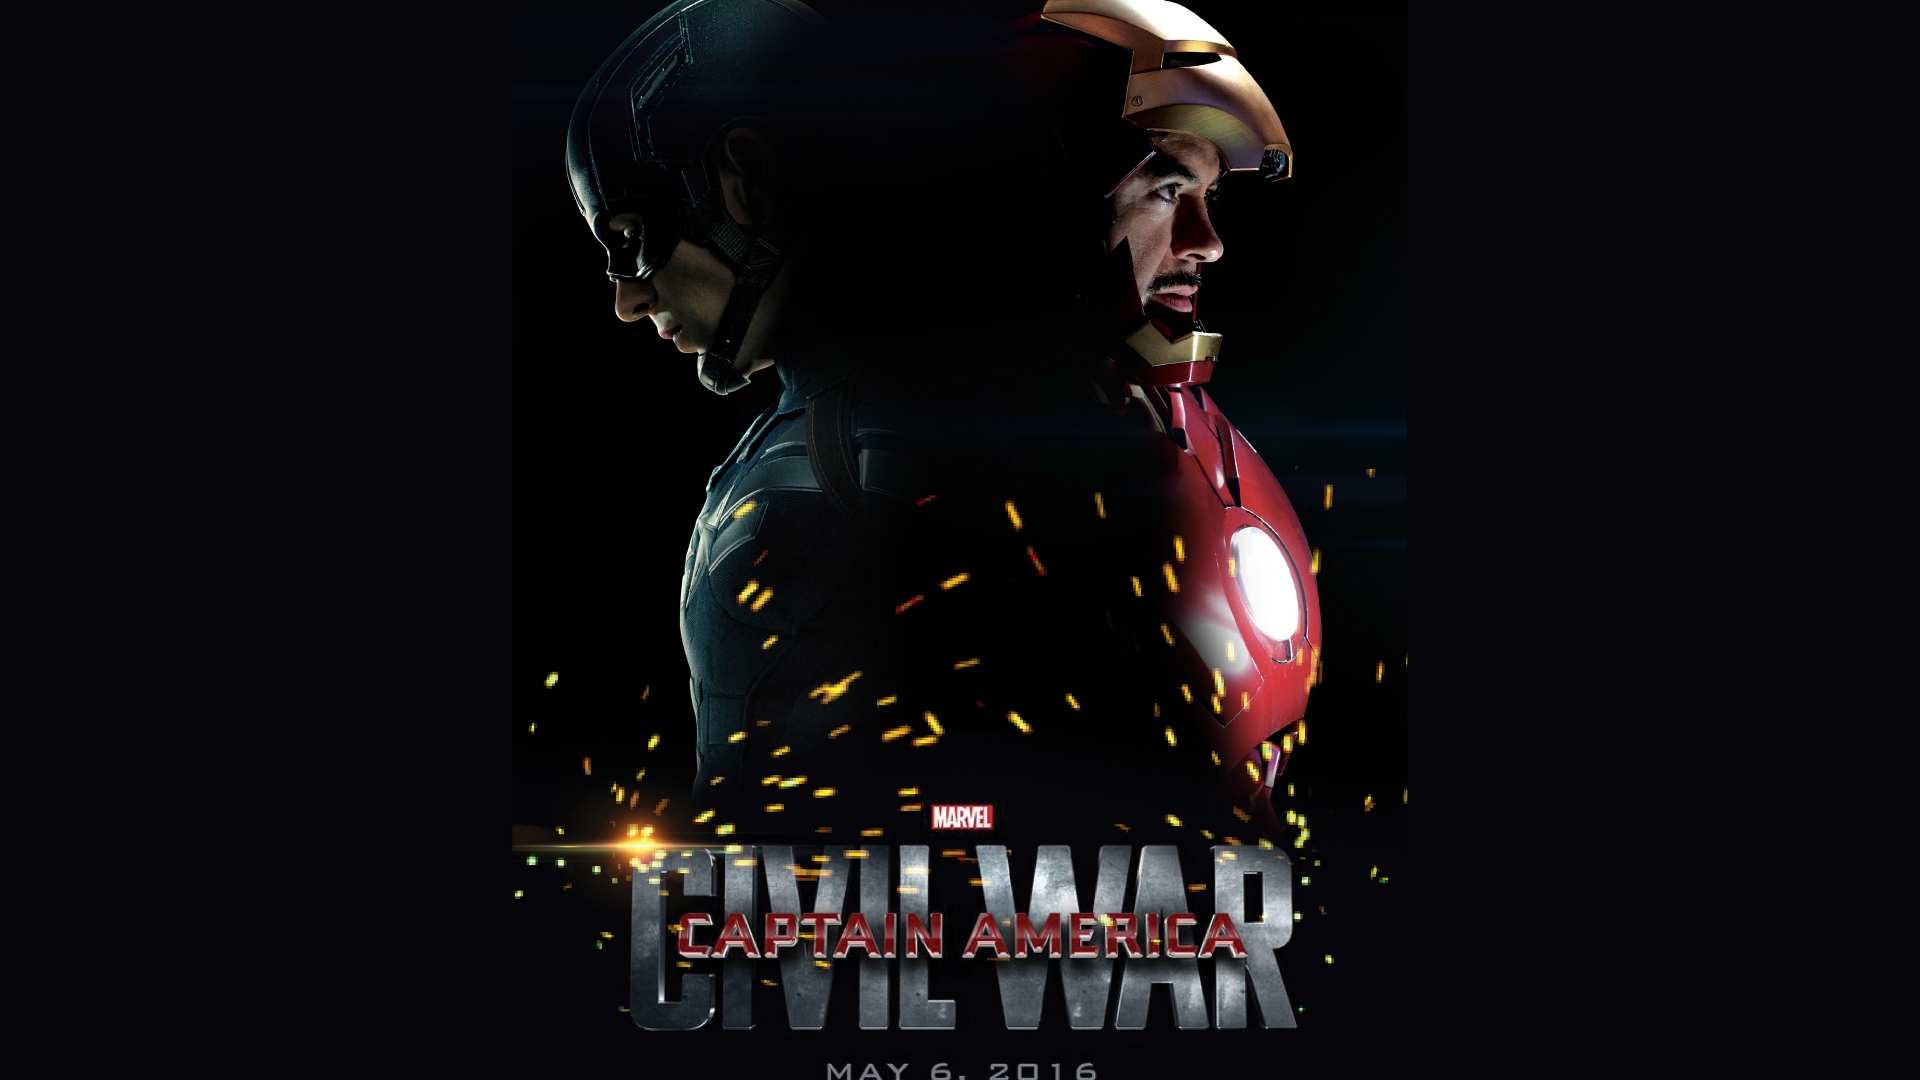 Captain America Civil War 2016 for 1920 x 1080 HDTV 1080p resolution